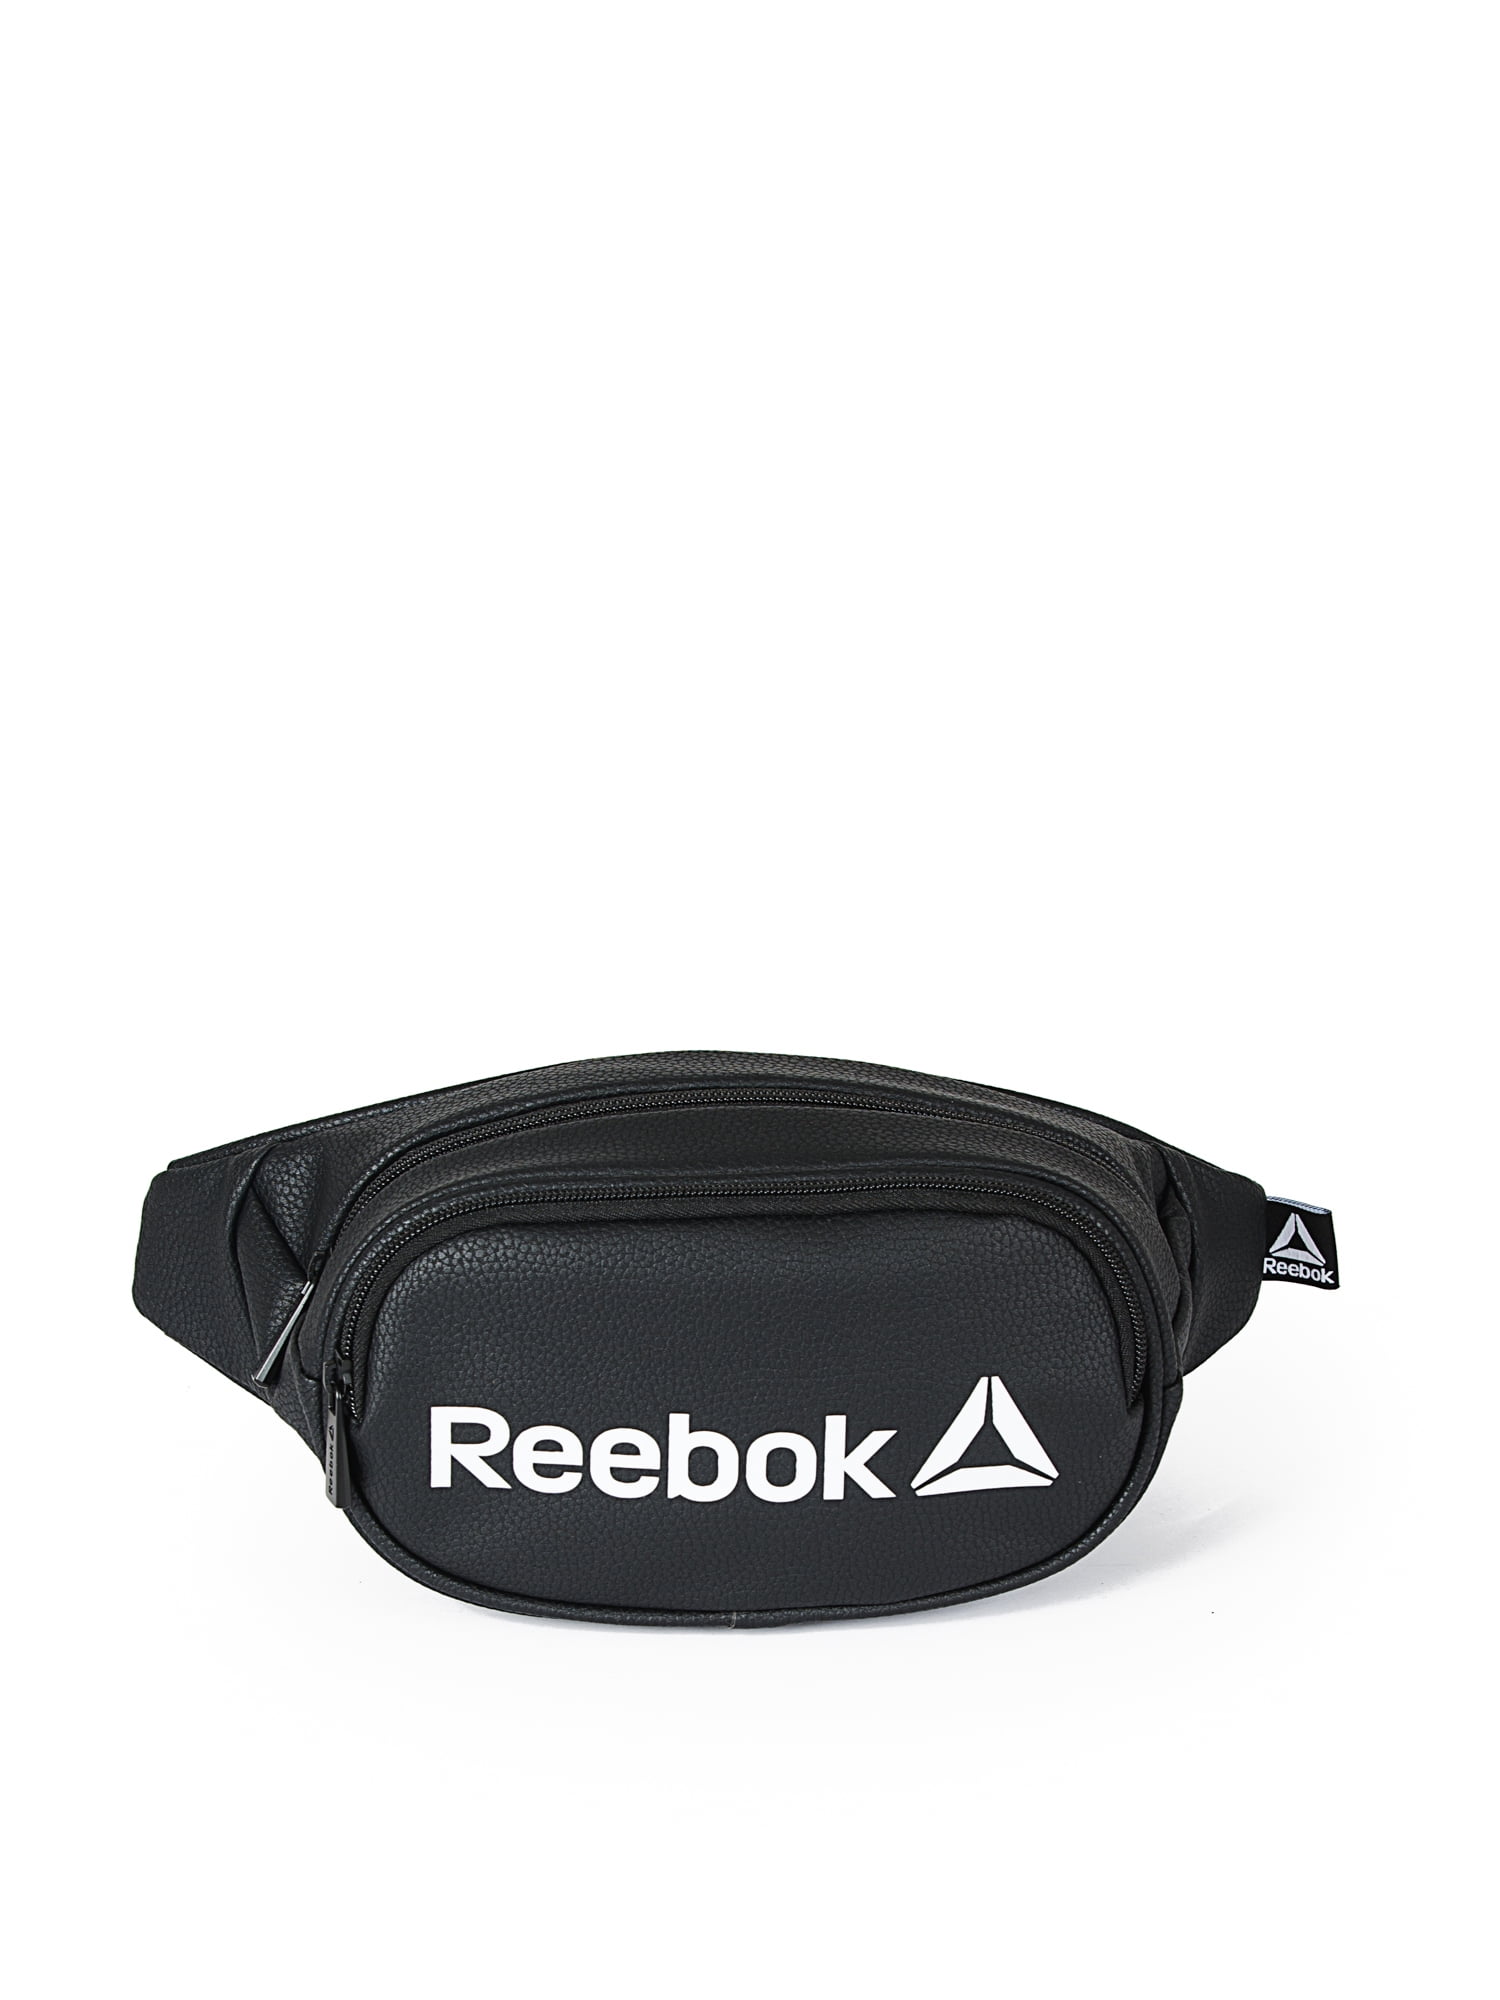 reebok fanny pack